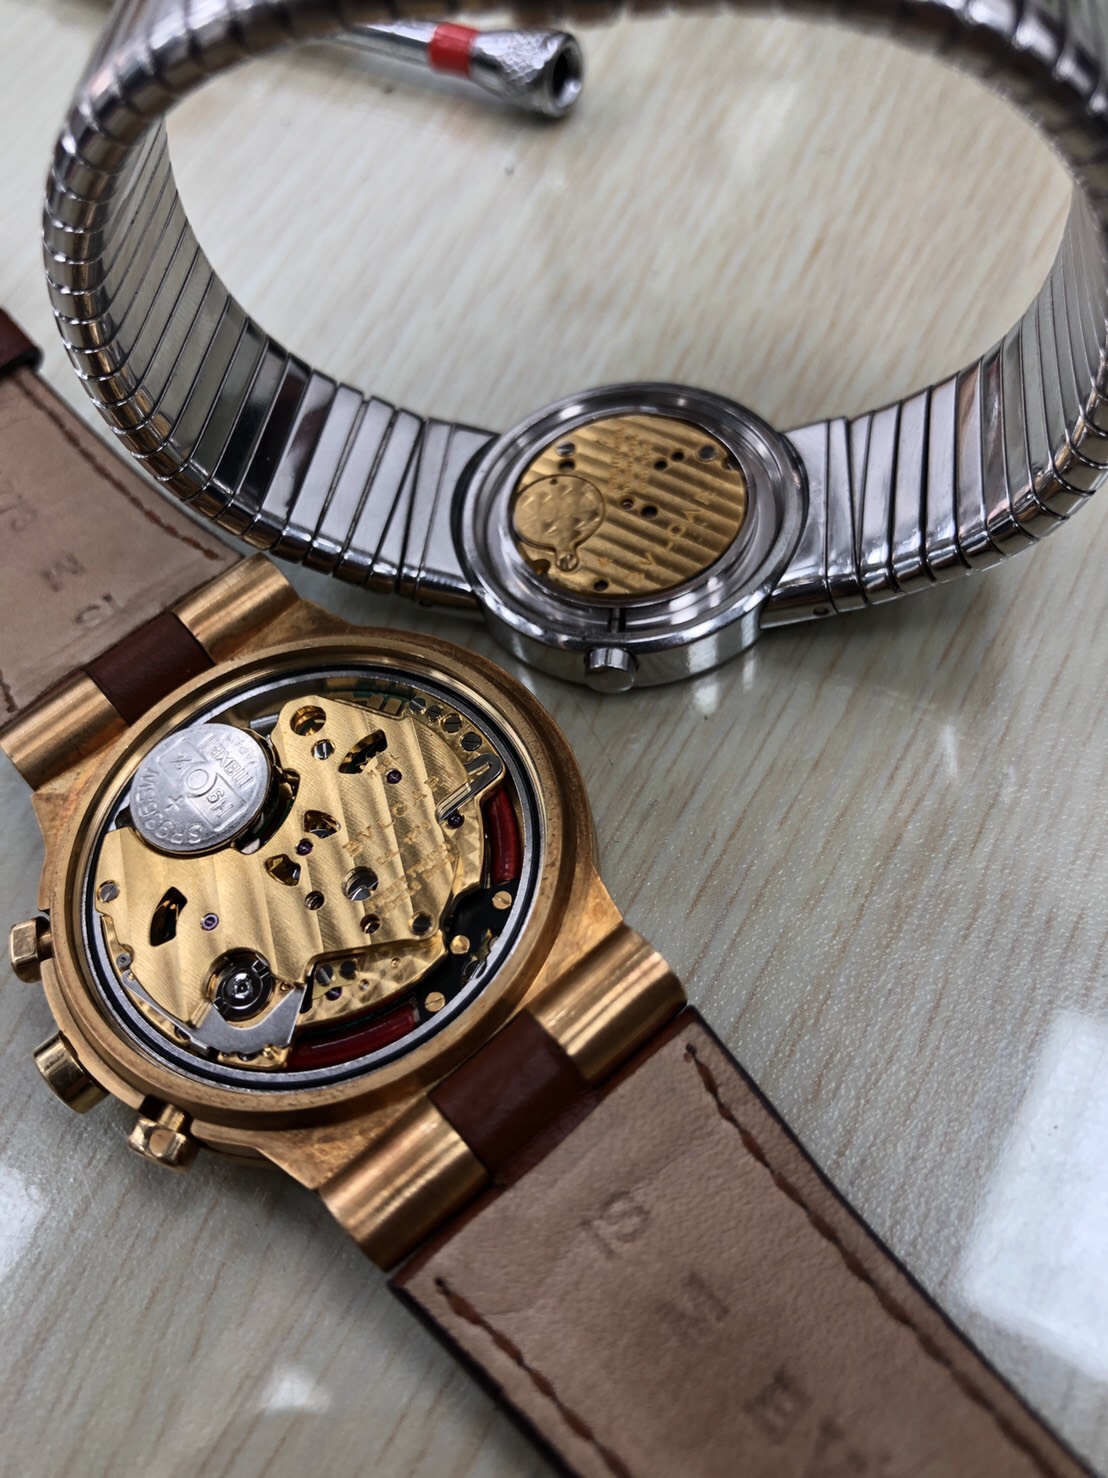 台中專業收購手錶 瑞士錶 機械錶 石英錶 不限品牌 高價收購 免費估價鑑定 無盒單也可收購 手錶借款 周轉